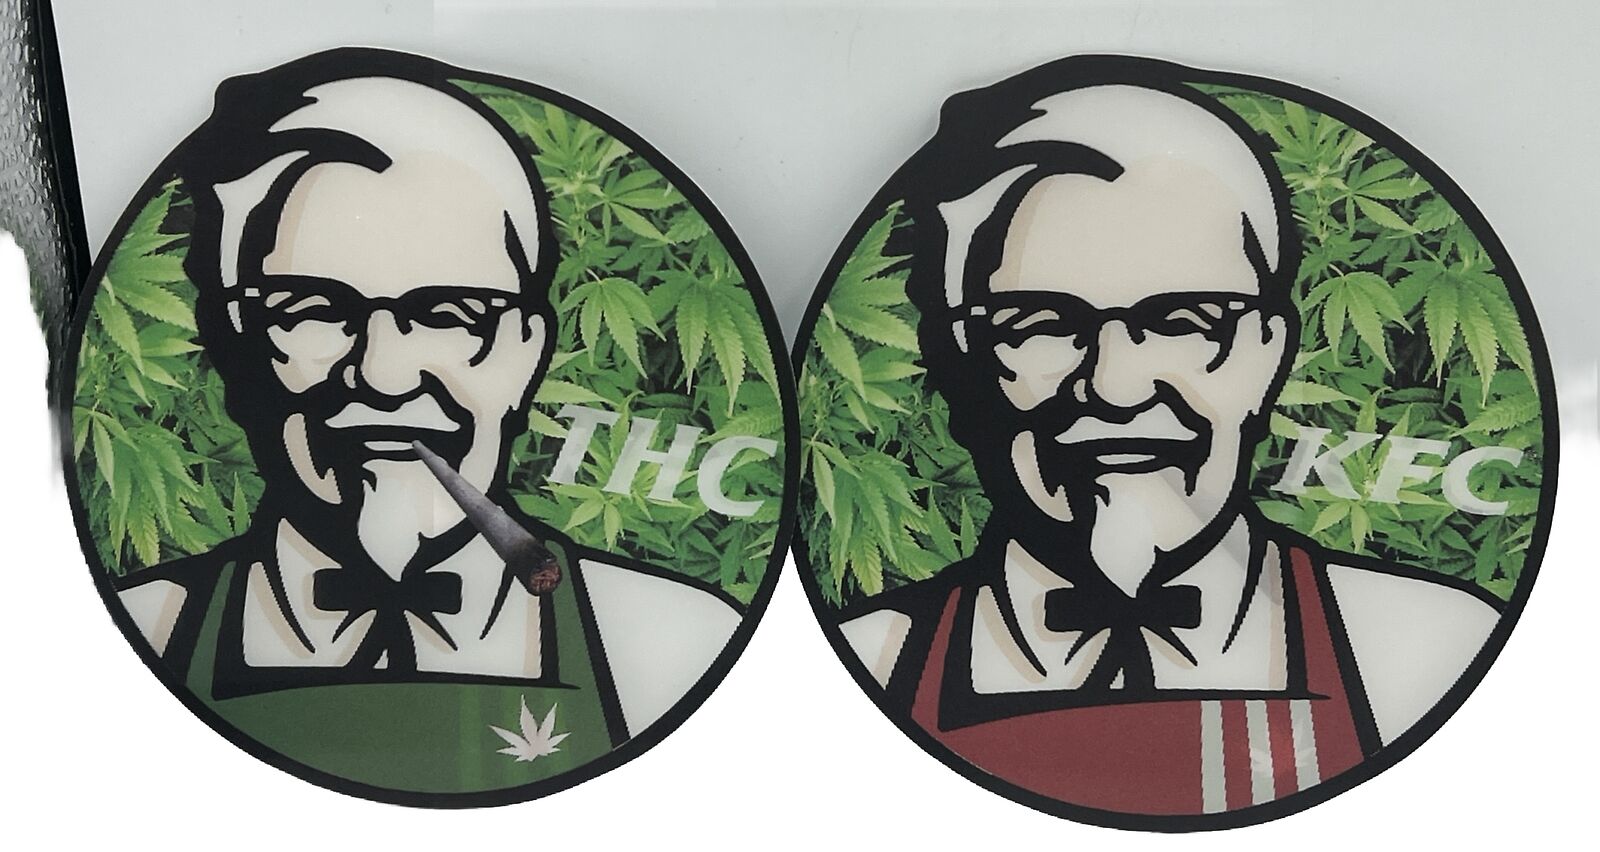 KFC Sticker Emblem Thc Logo 3D Lenticular Car Peeker Motion Decal Sticker 5”x5”